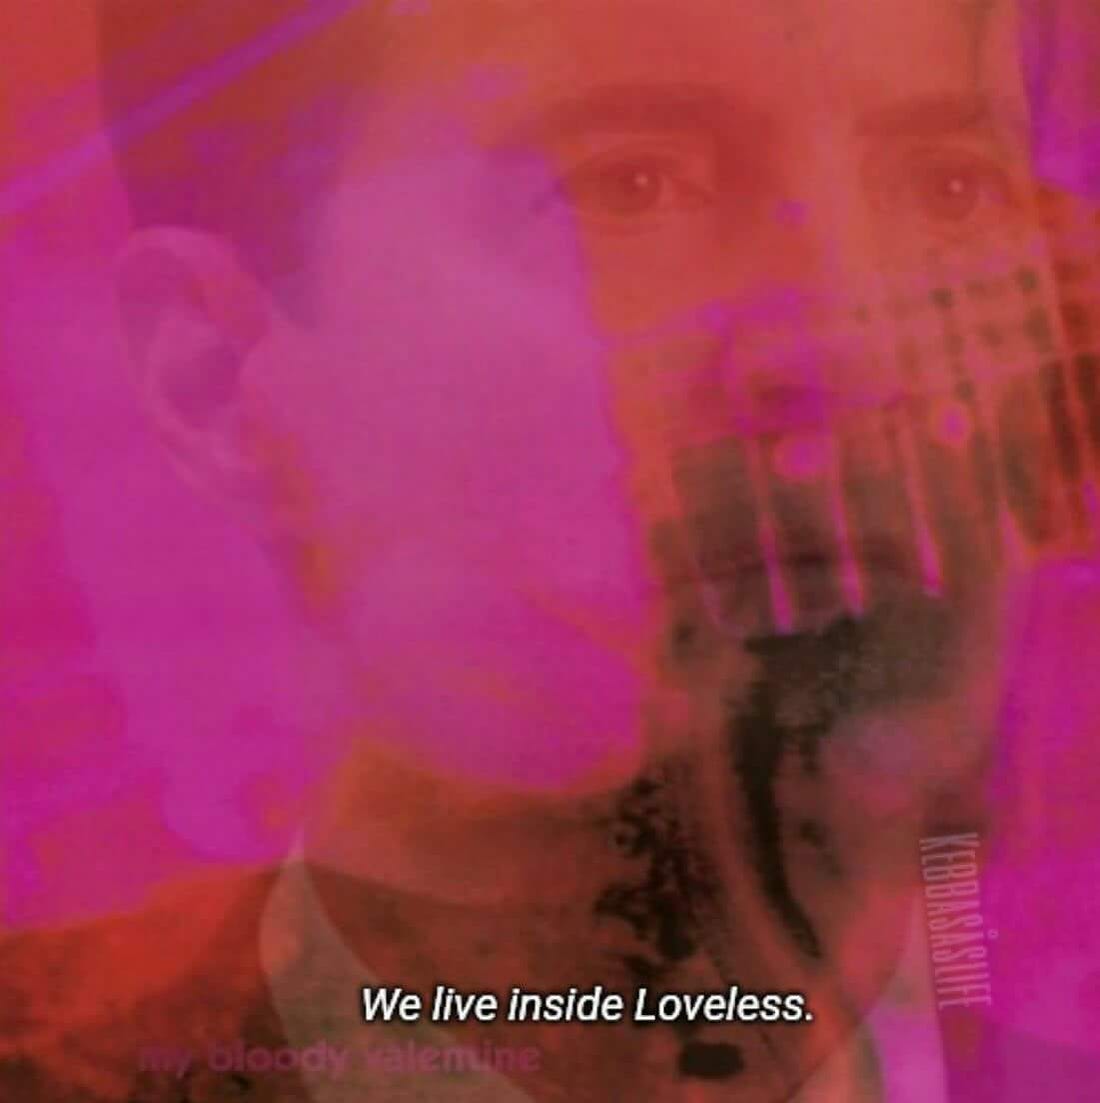 We live inside Loveless - Album on Imgur